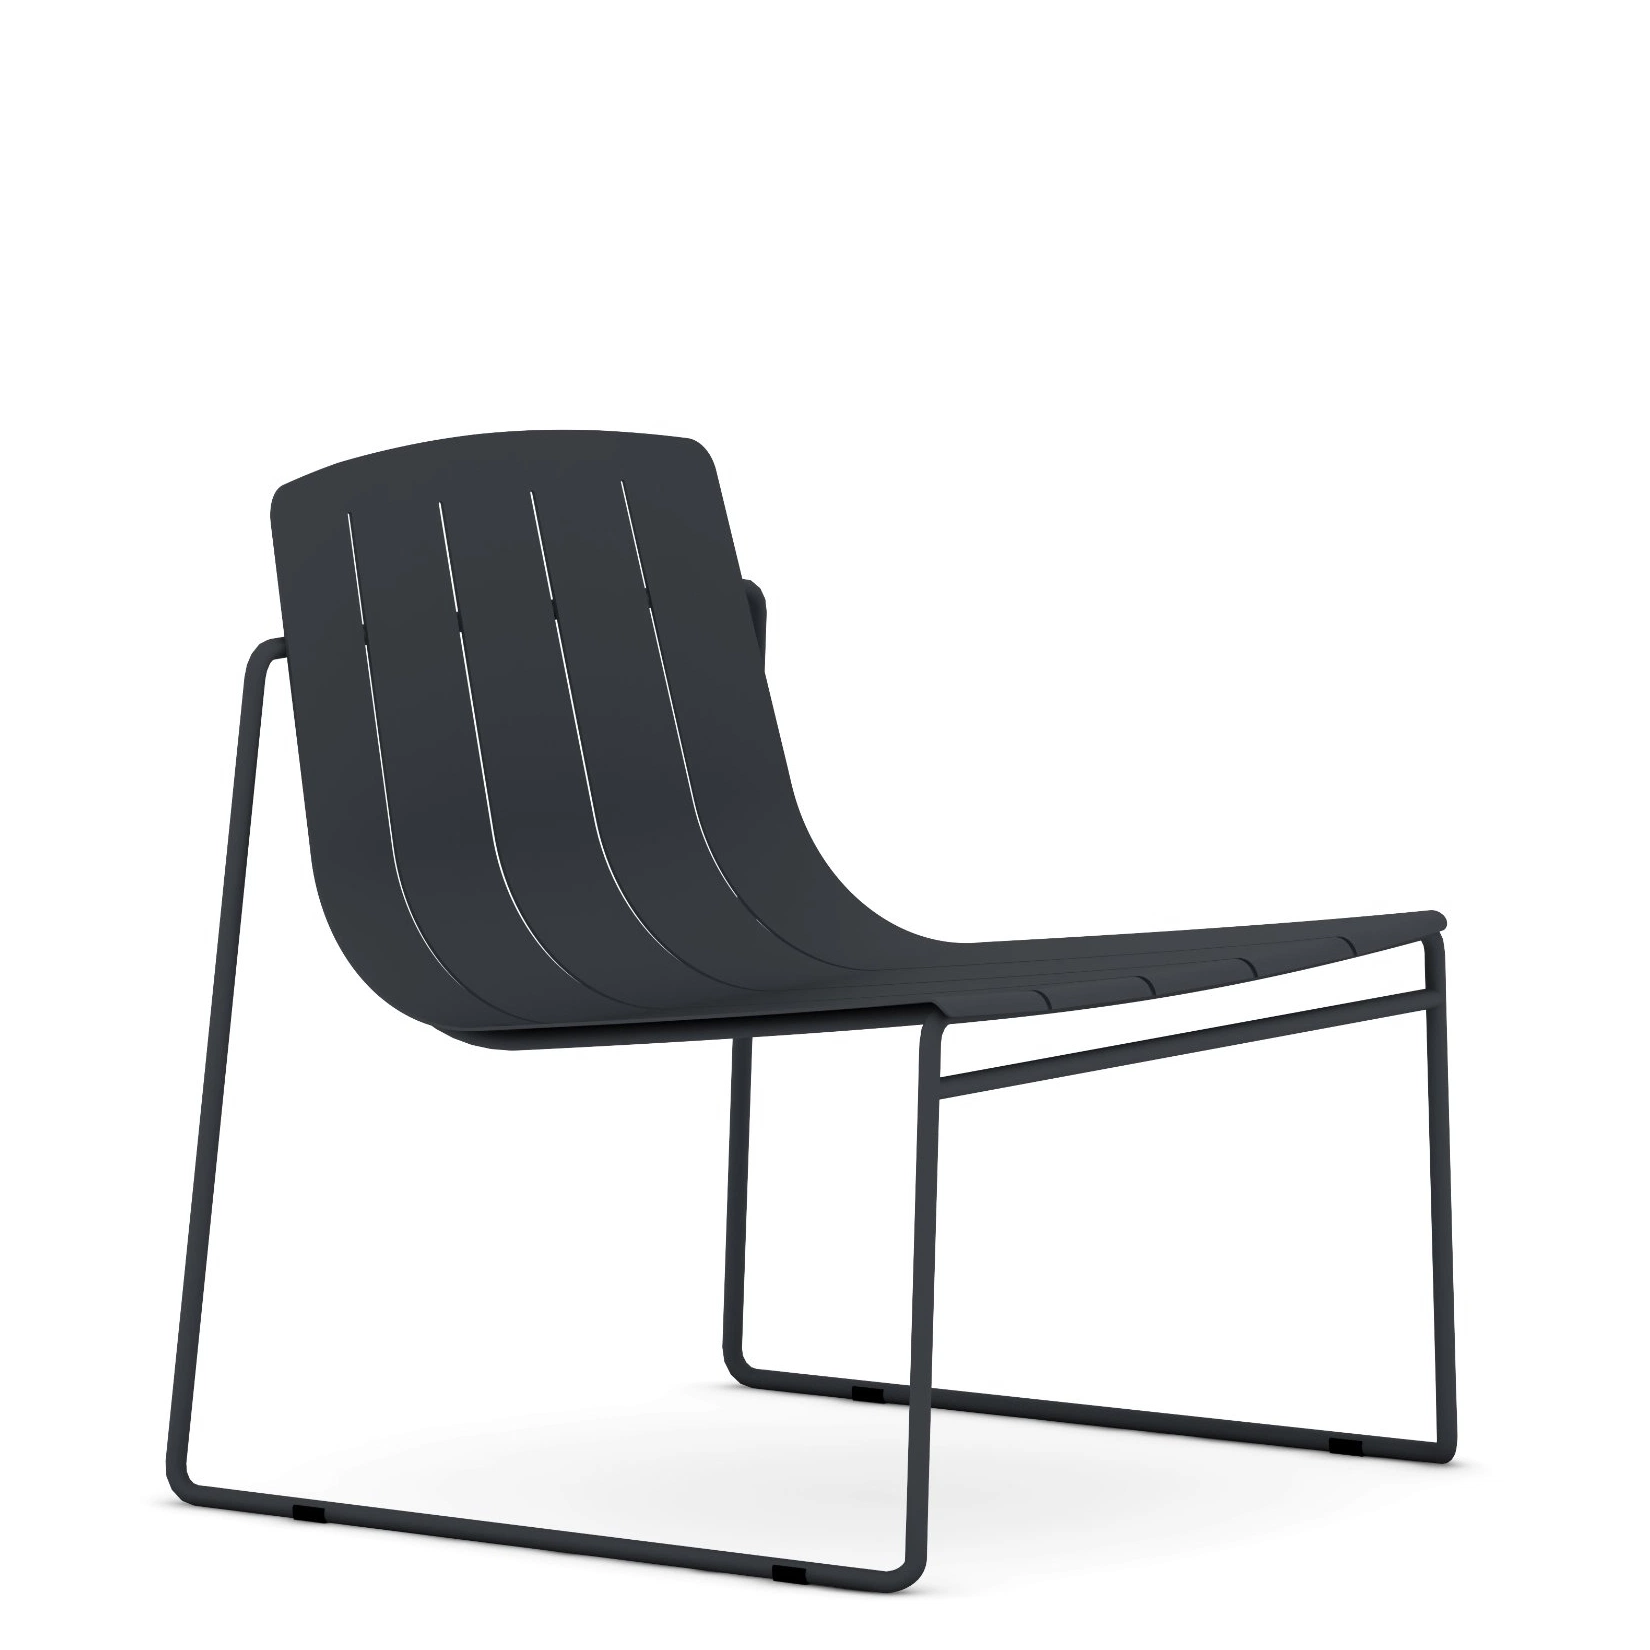 Sunlink Dasia Cadeira de Jardim Preta Empilhável de Alumínio Moderna para Ambientes Externos